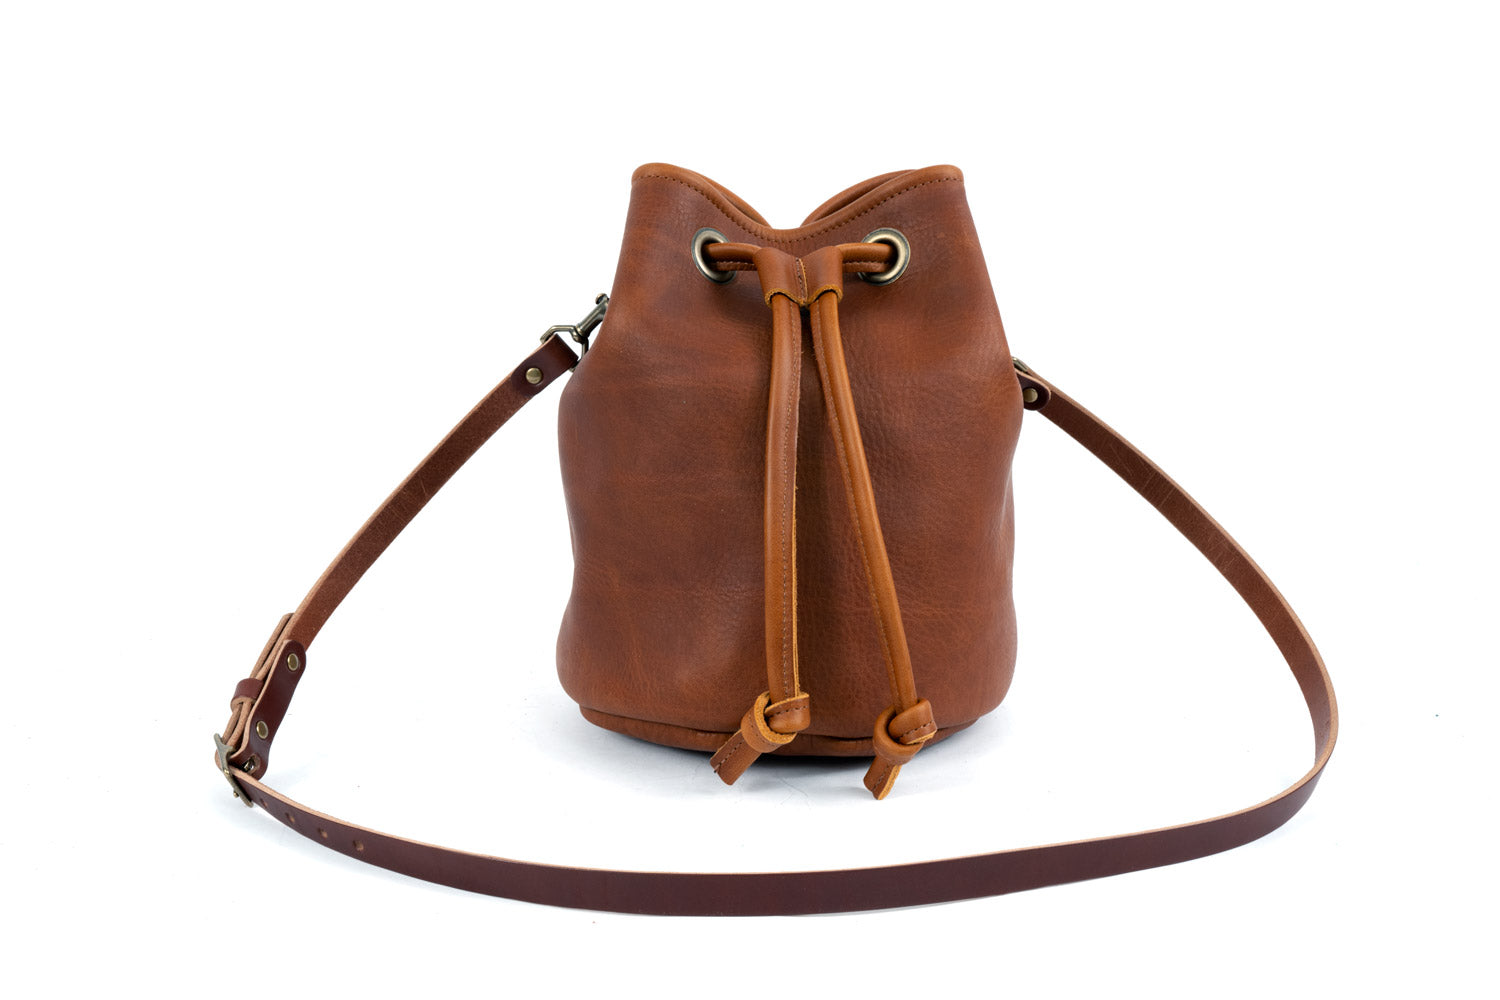 Celeste Leather Hobo Bag - Large - Saddle - Go Forth Goods ®